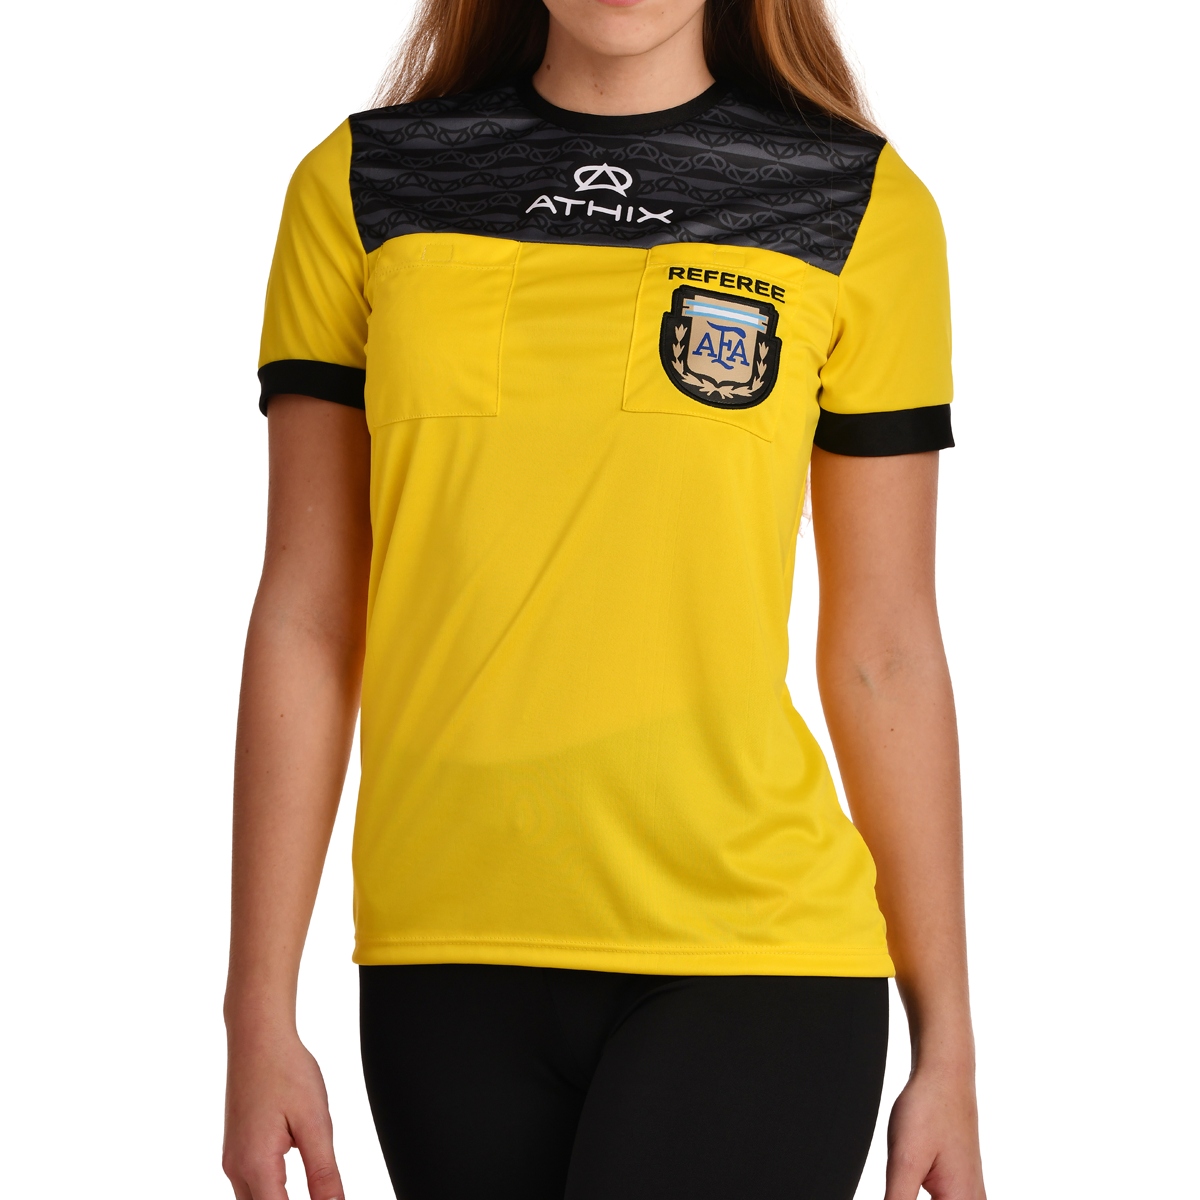  Camisa oficial de árbitro para mujer, camiseta de